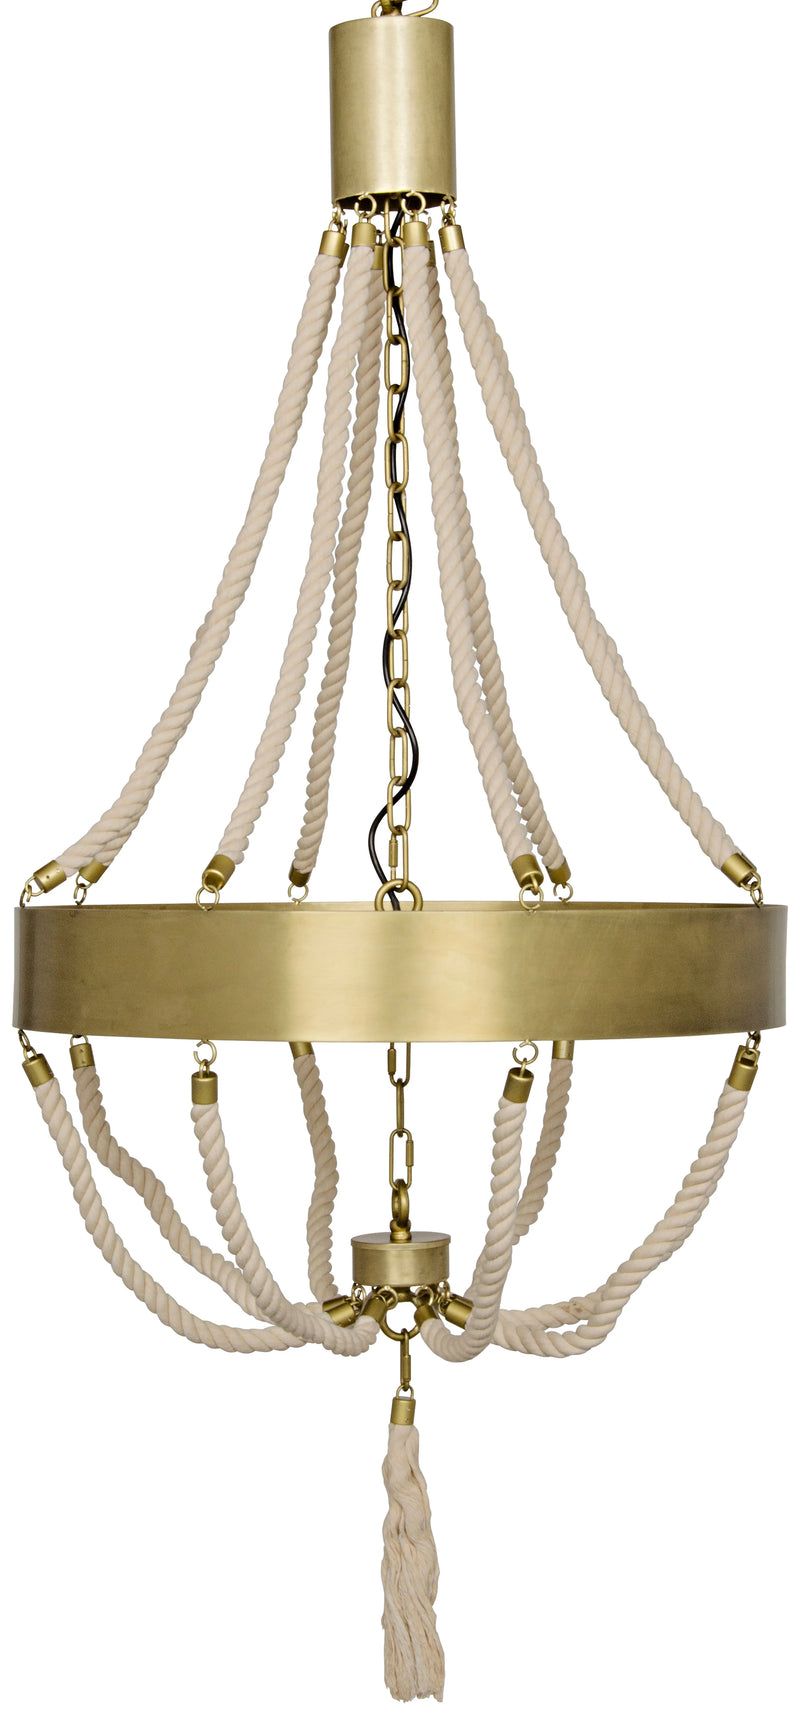 media image for alec chandelier design by noir 1 273